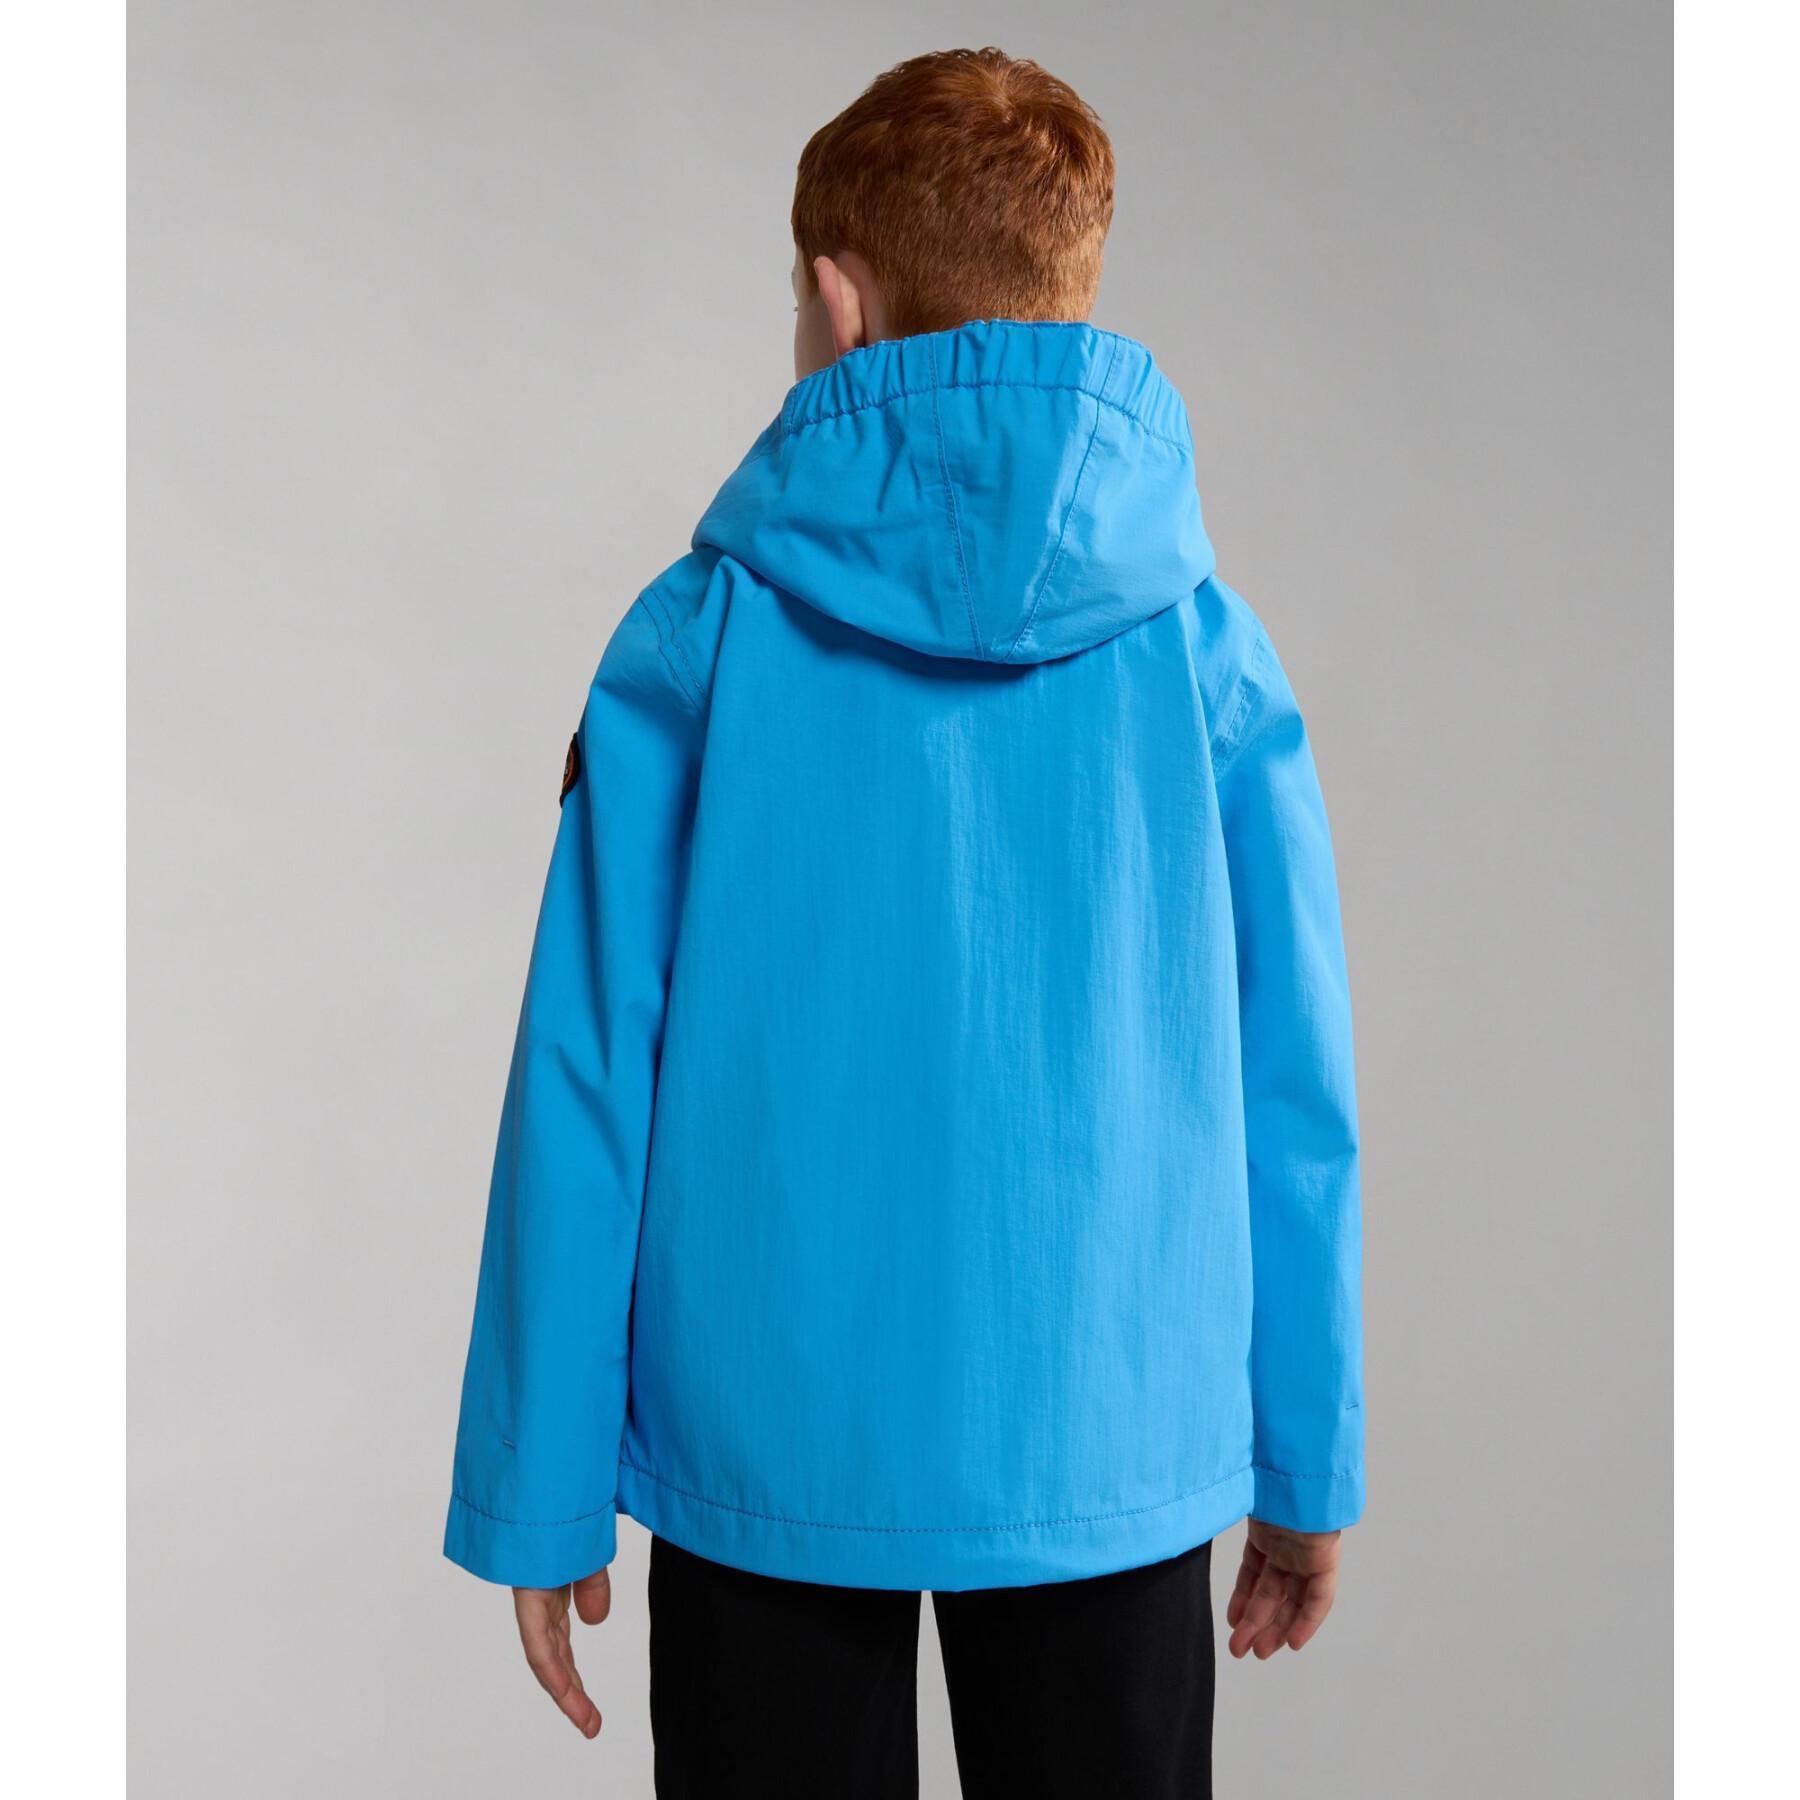 Waterproof jacket for children Napapijri Rainforest